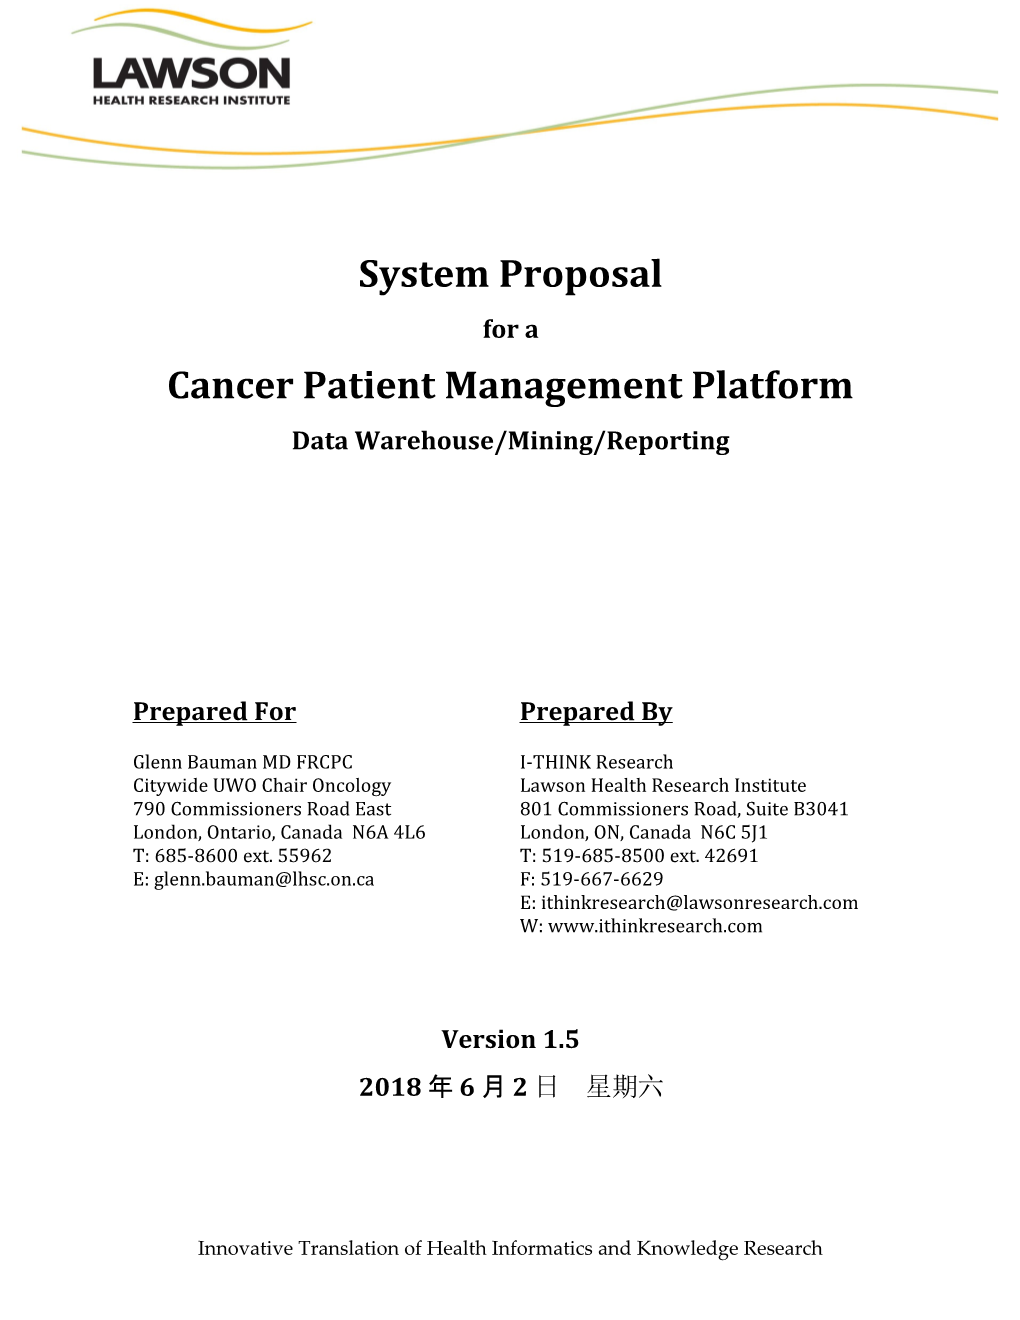 Cancer Patient Management Platform